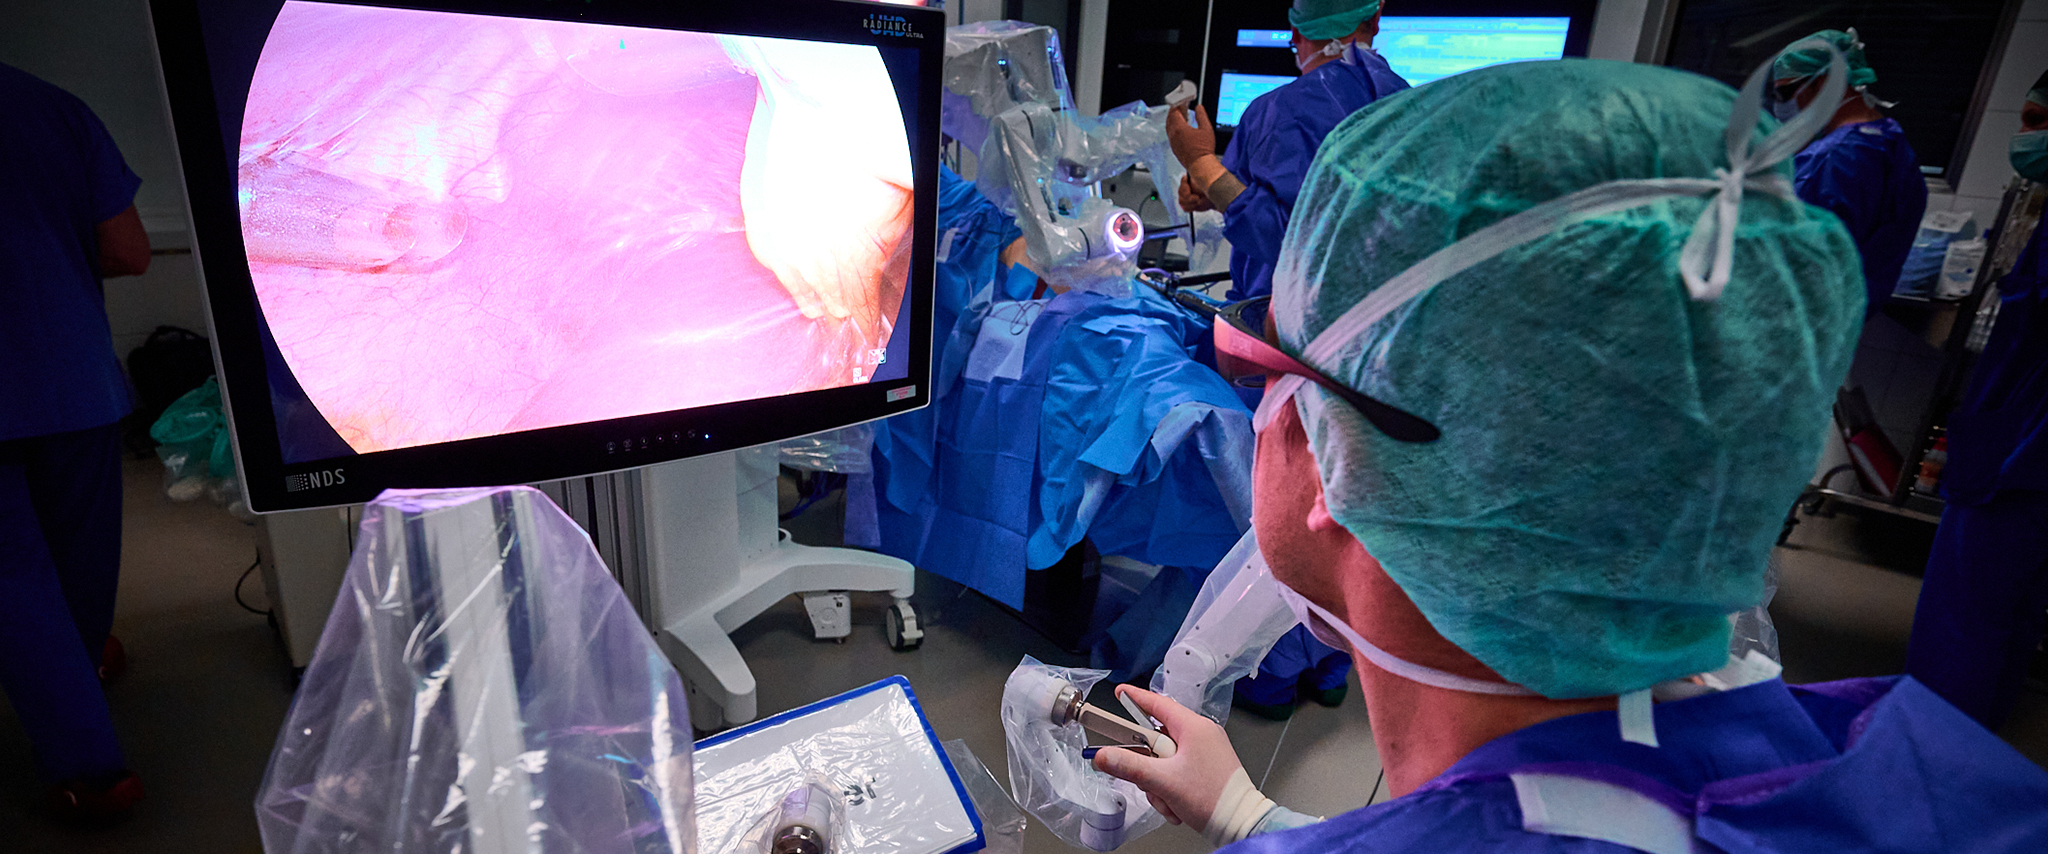 Prof. Hanno Matthaei operiert steril an der Konsole während eines Eingriffs mit dem neuen OP-Roboter Dexter.